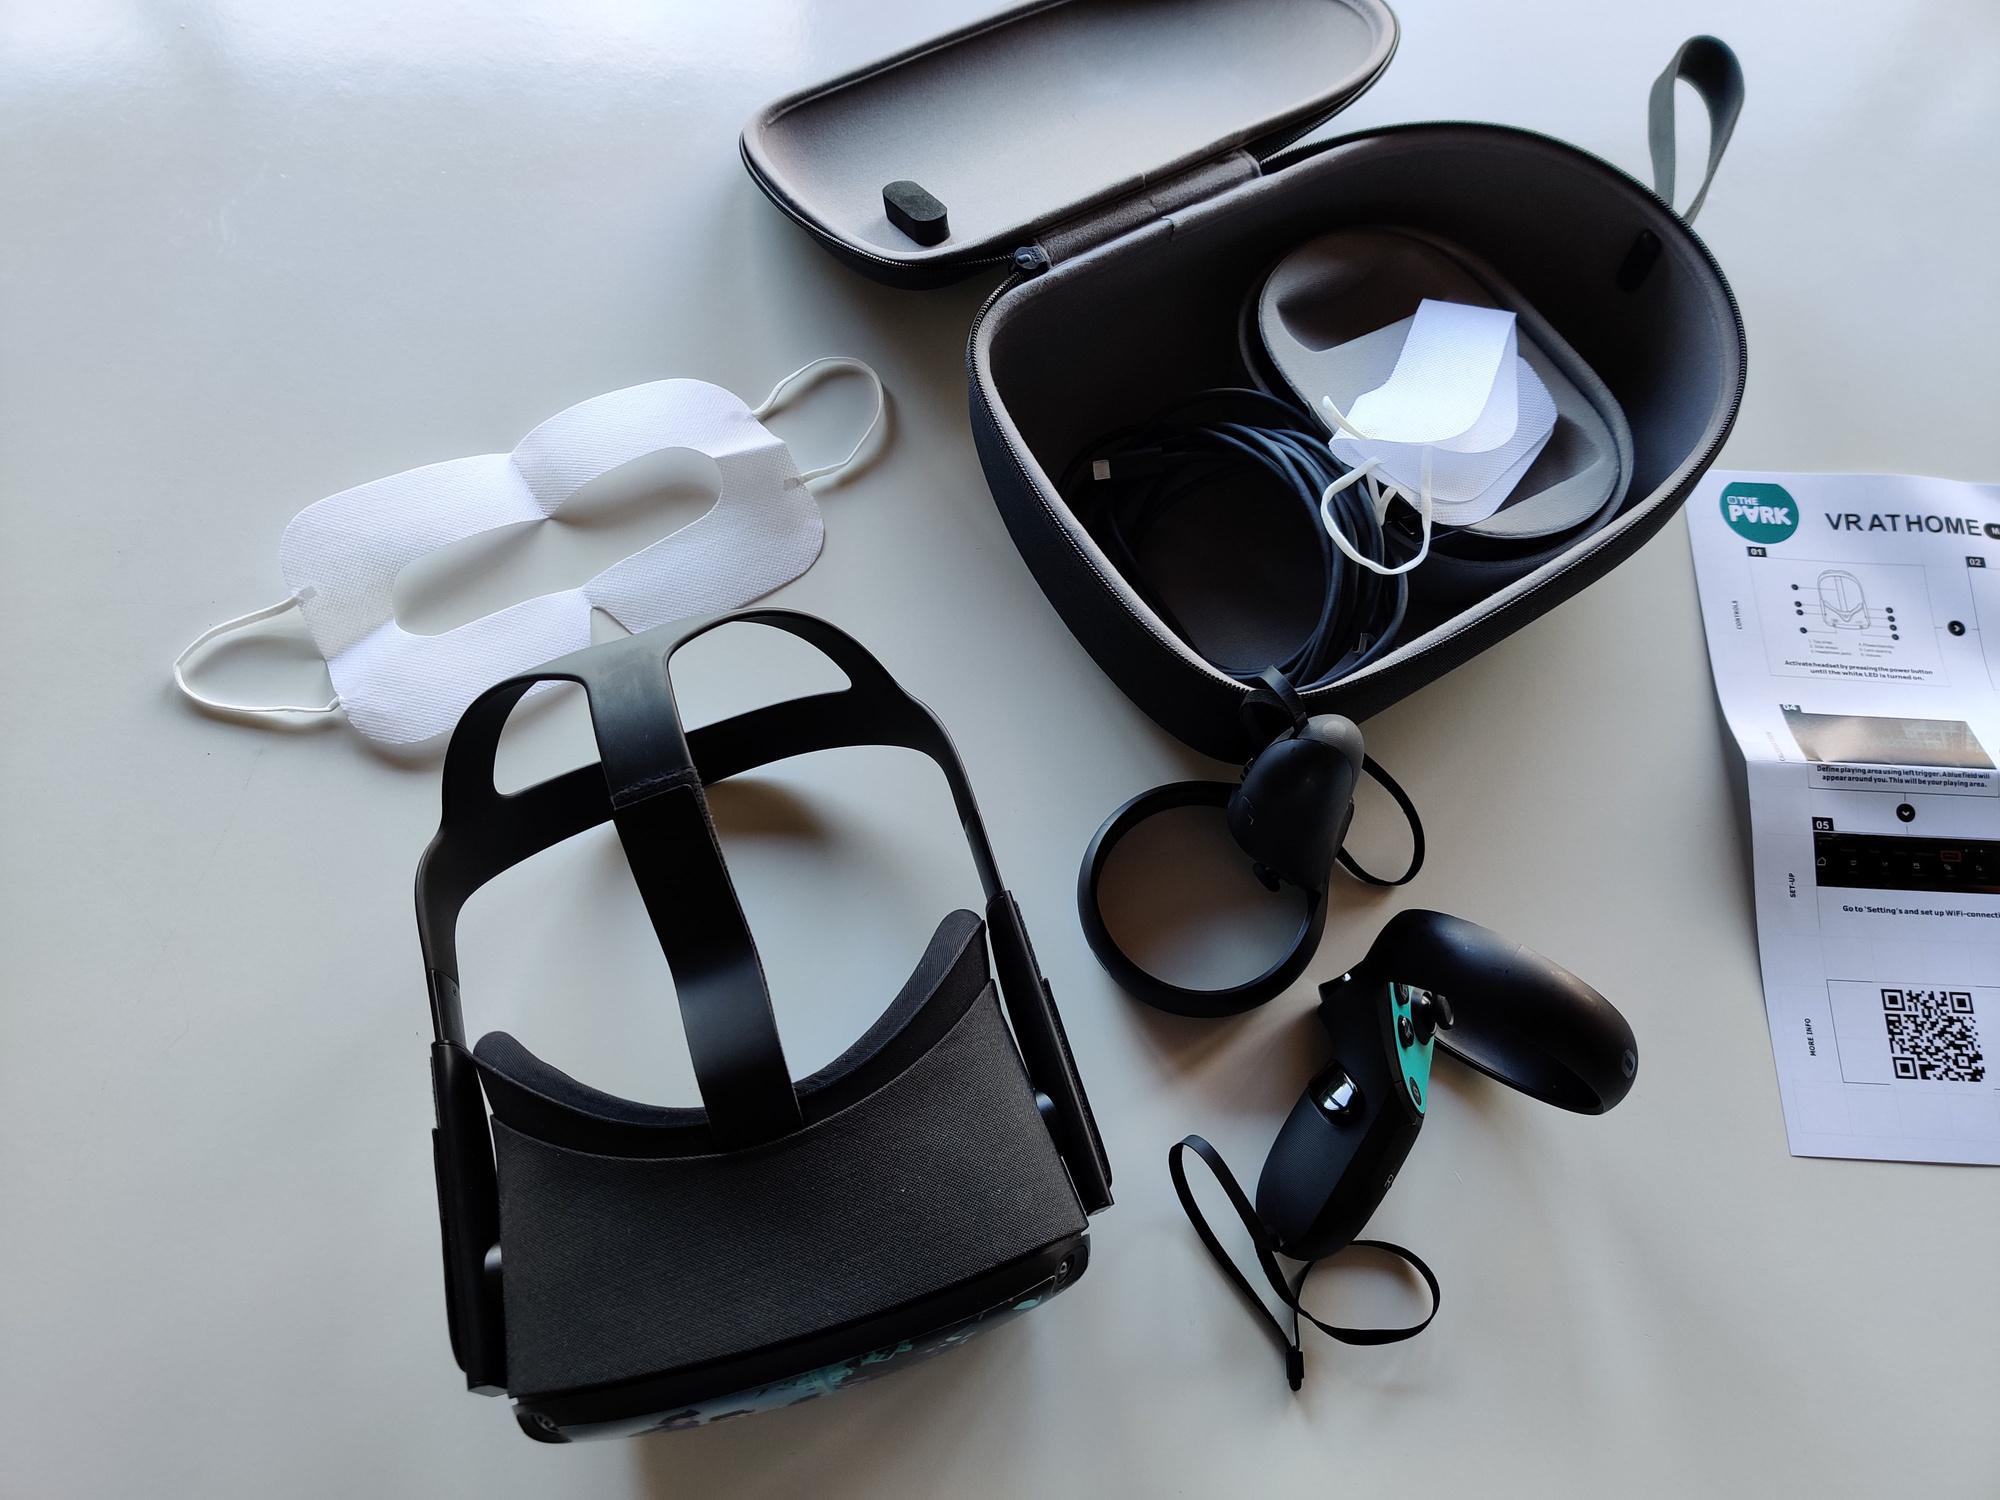 Het volledige pakket bestaat uit een headset, twee controllers, een oplaadkabel en twee gezichtsmaskers.